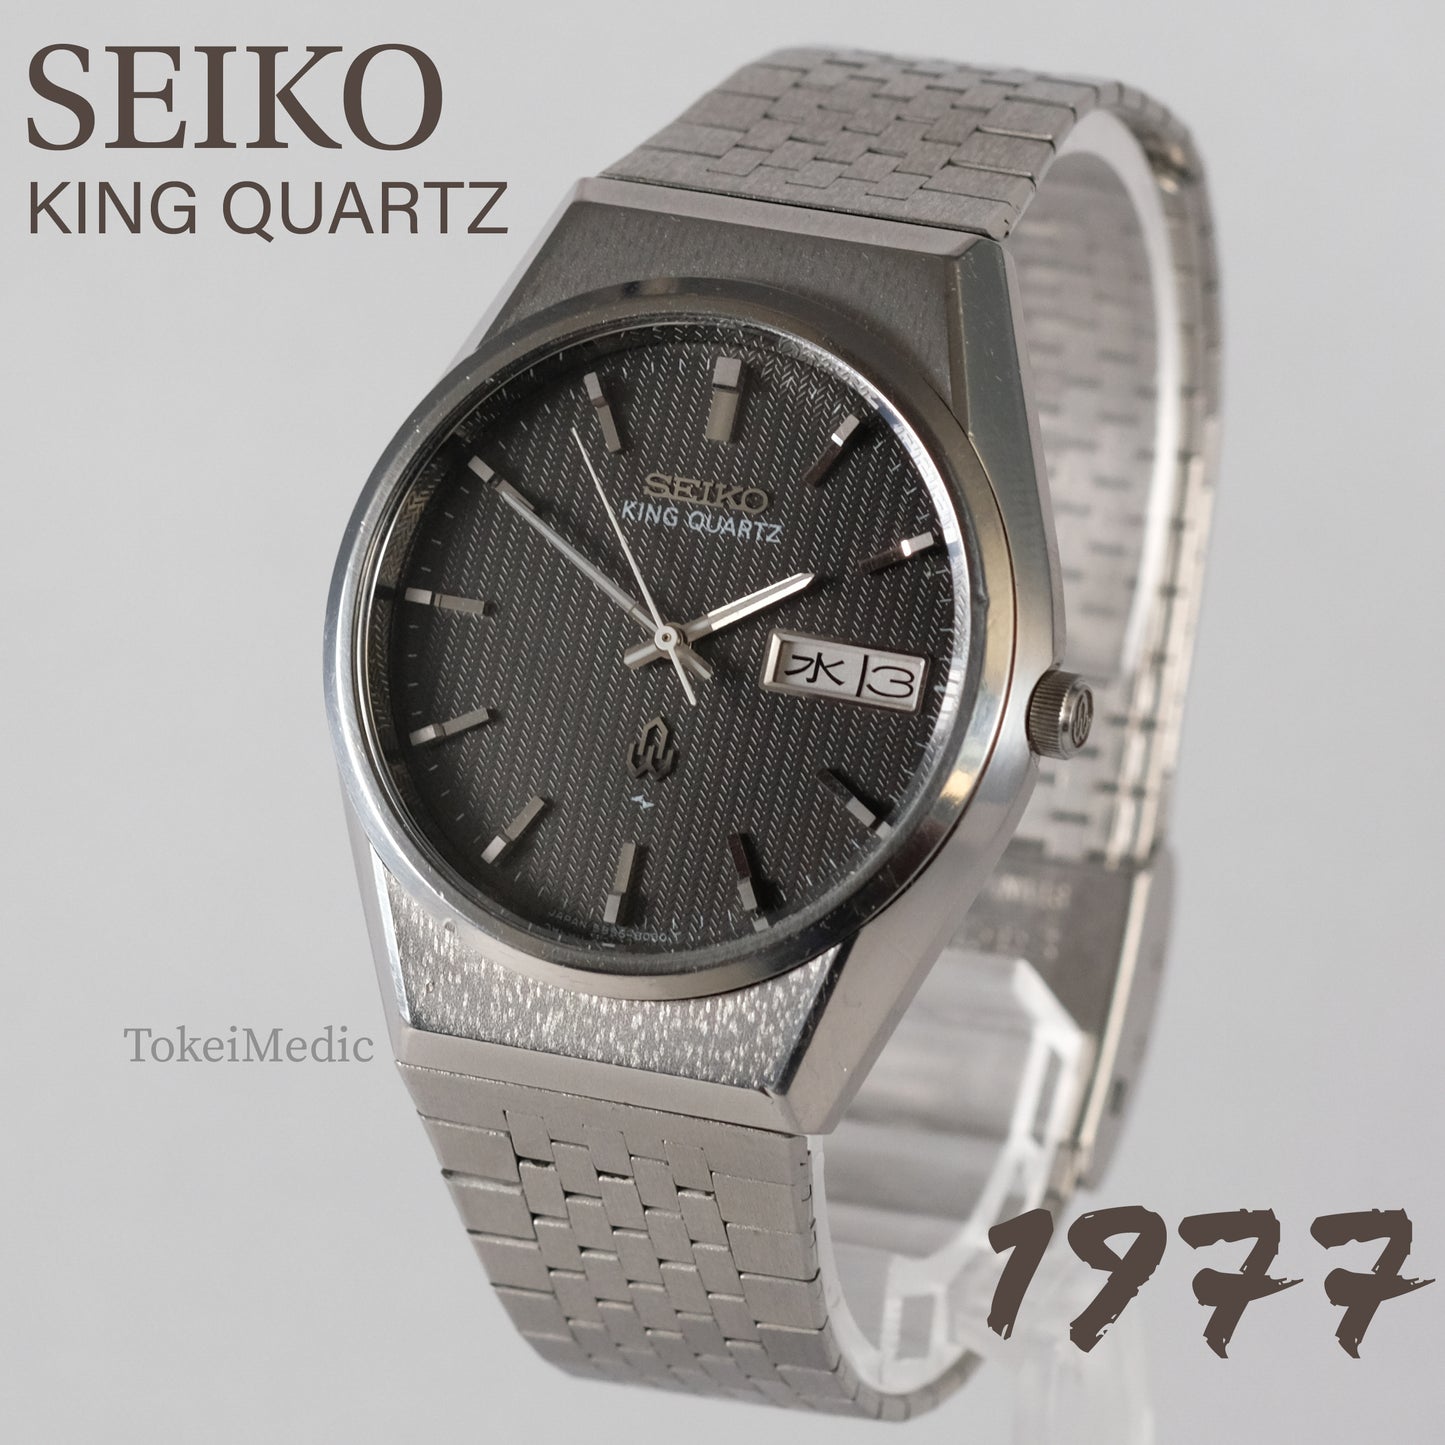 1977 Seiko King Quartz 5856-8020